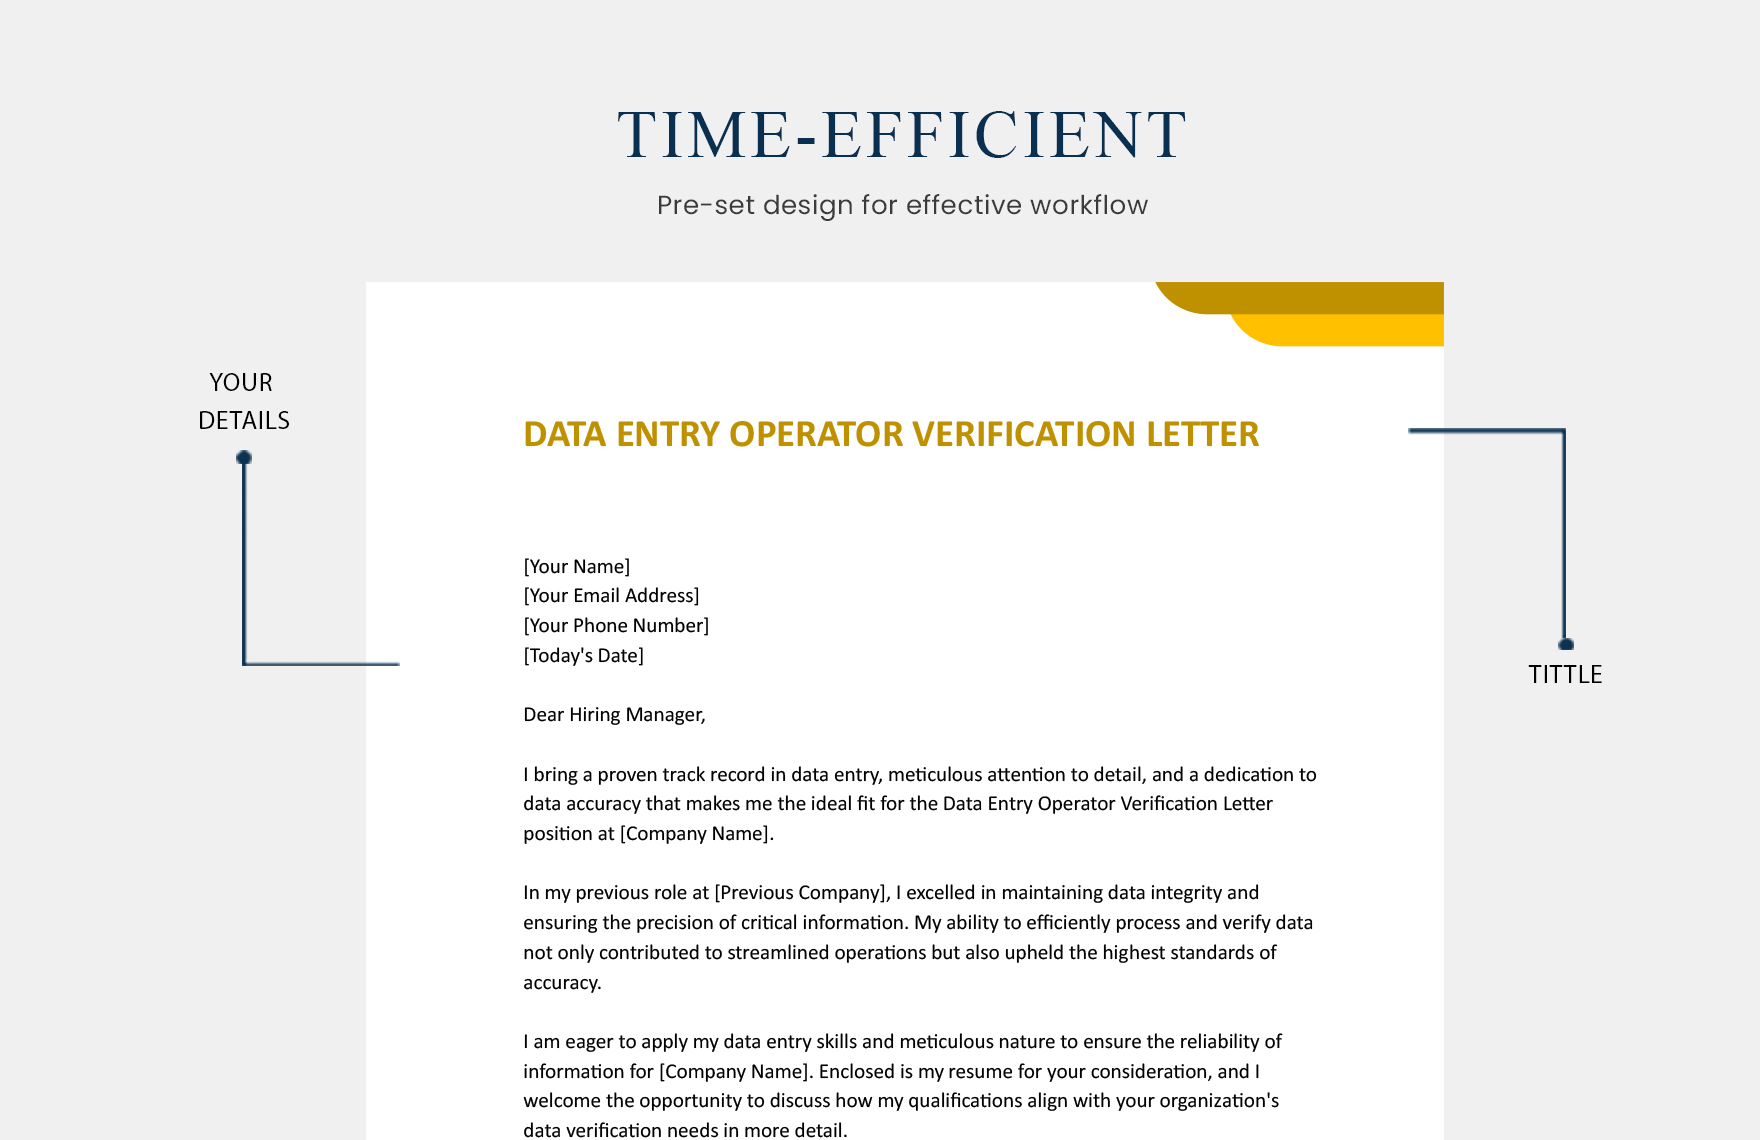 Data Entry Operator Verification Letter